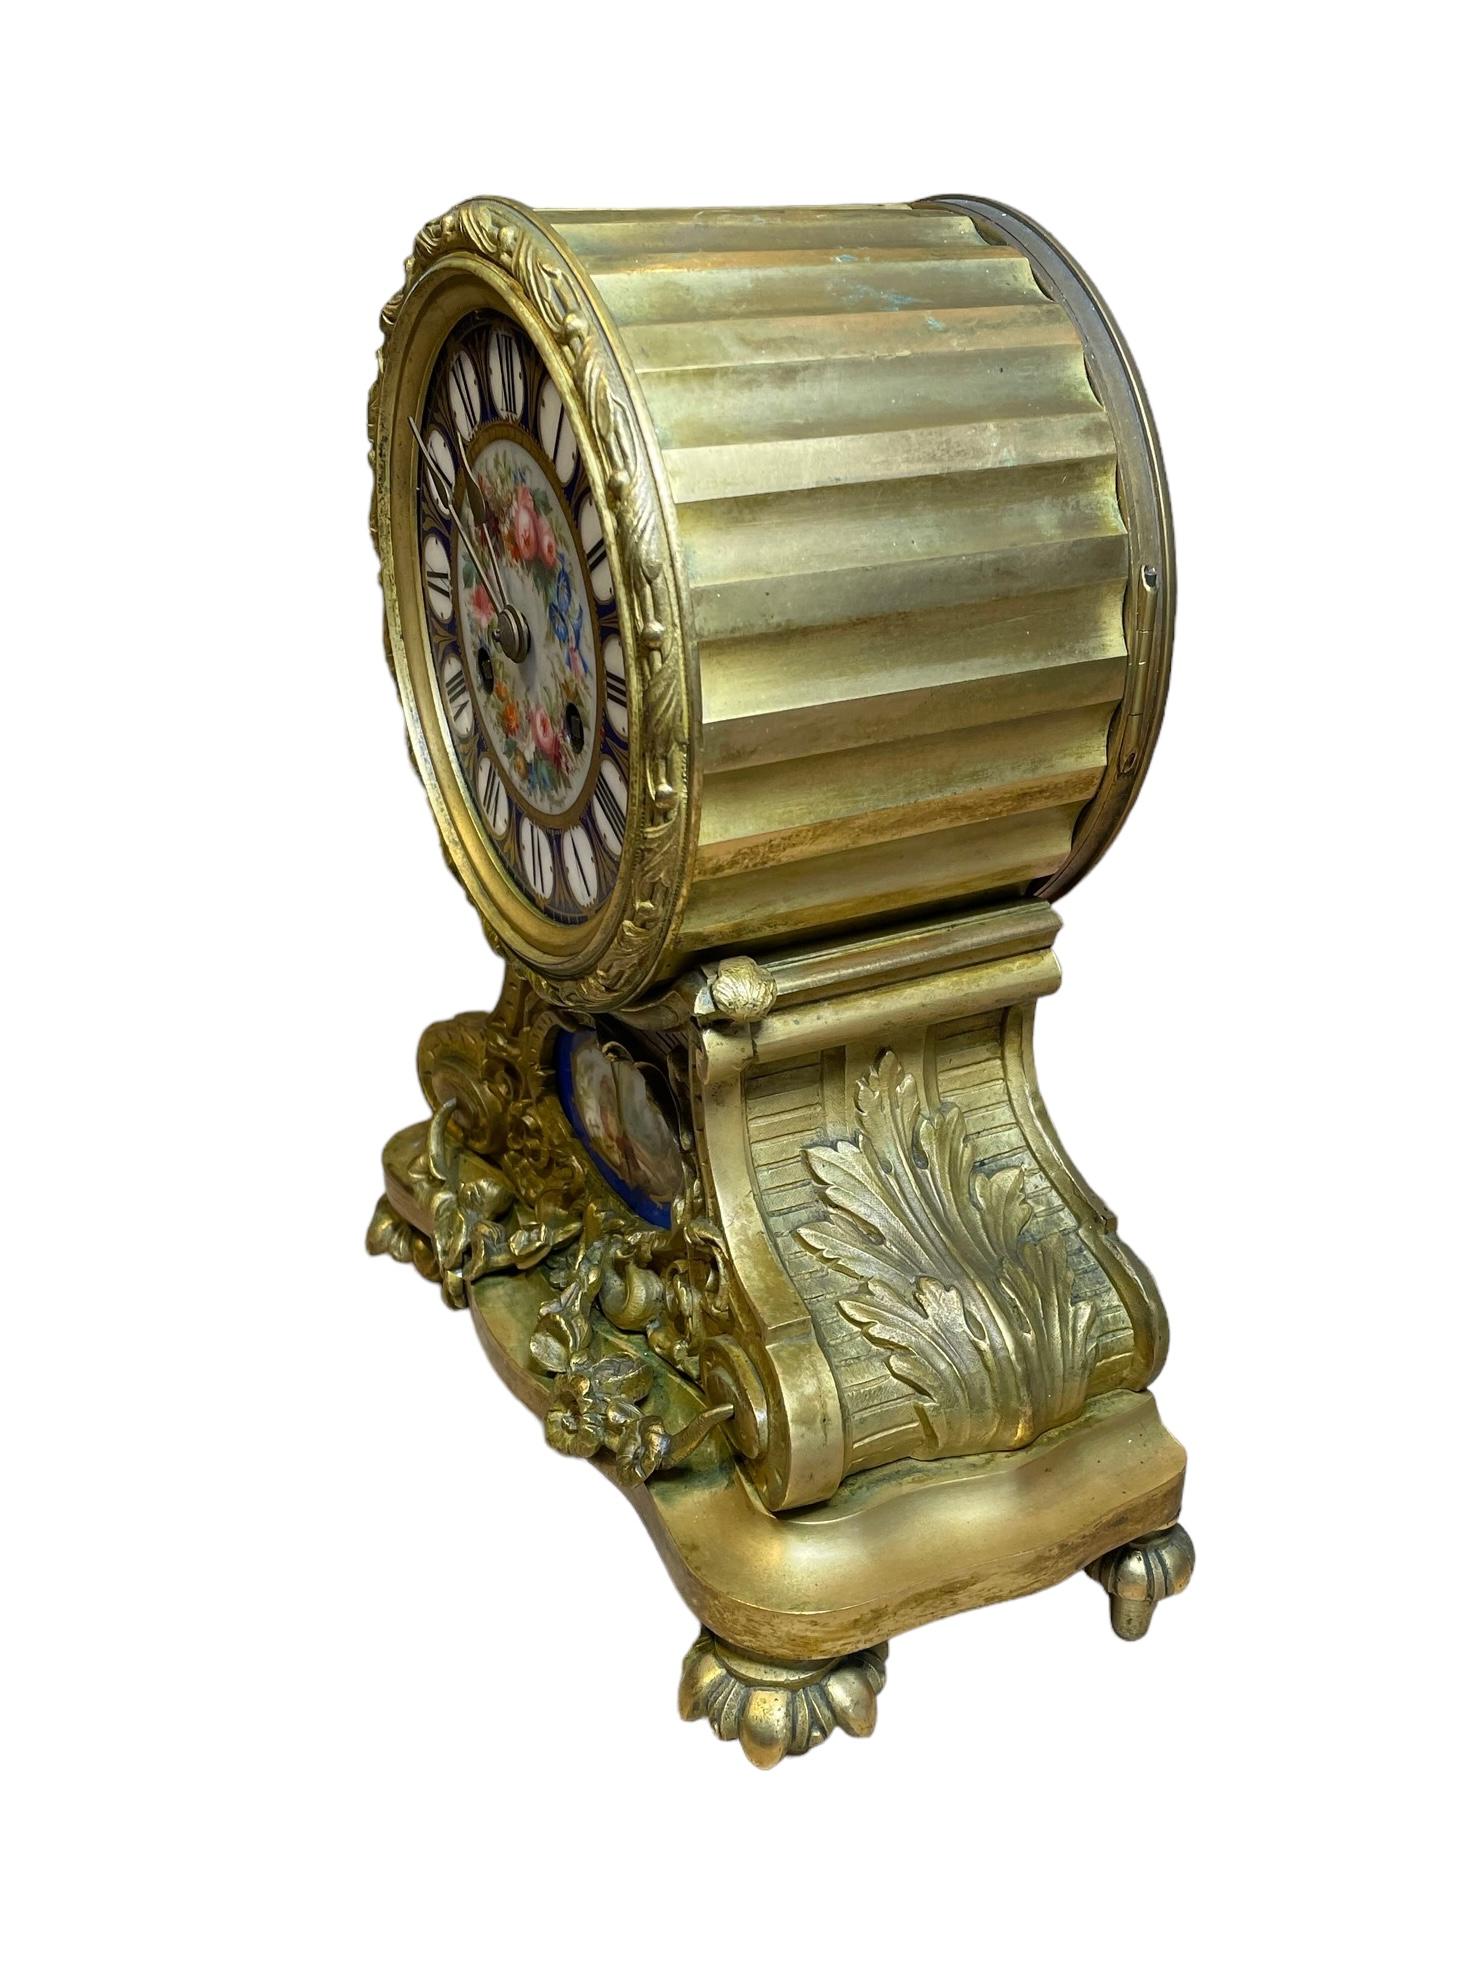 Rococo Jean Baptiste Delettrez Gilt Bronze Sevres Porcelain Drum Table Clock For Sale